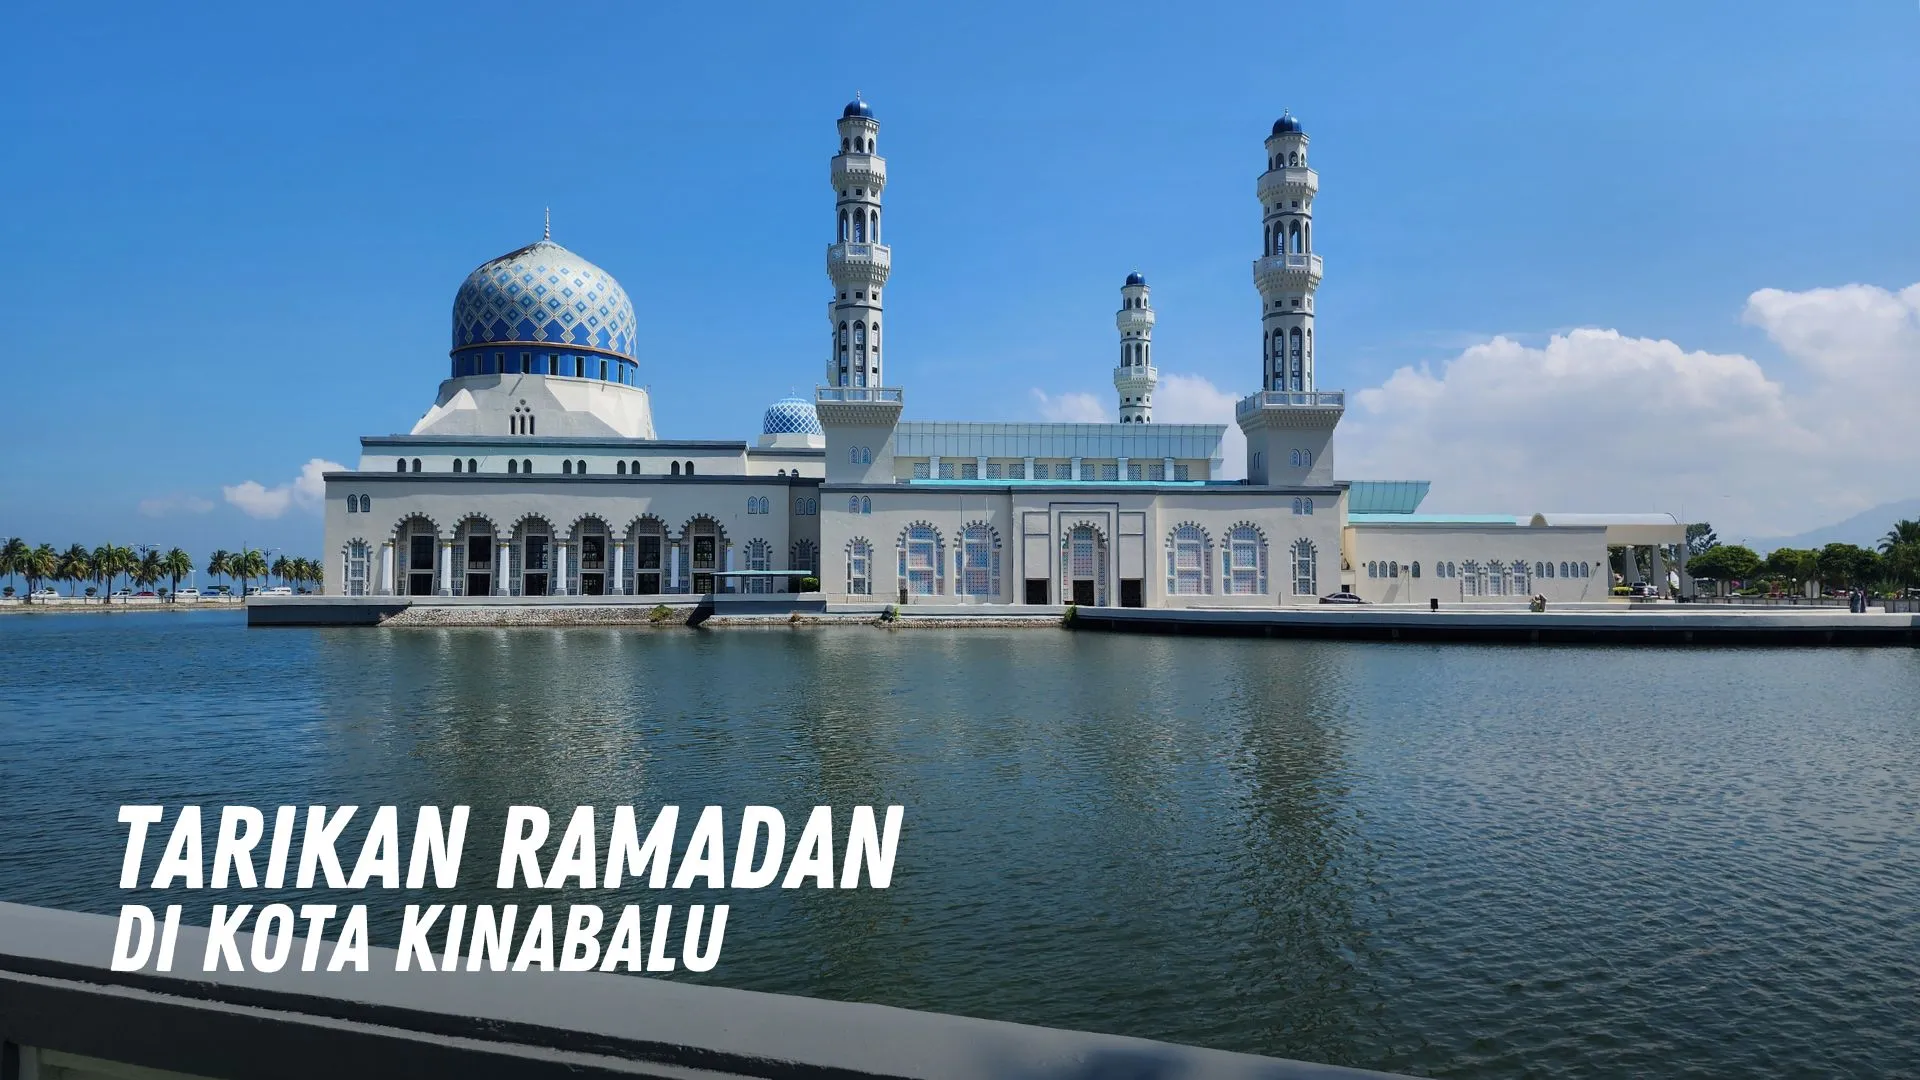 Tarikan Ramadan di Kota Kinabalu Malaysia